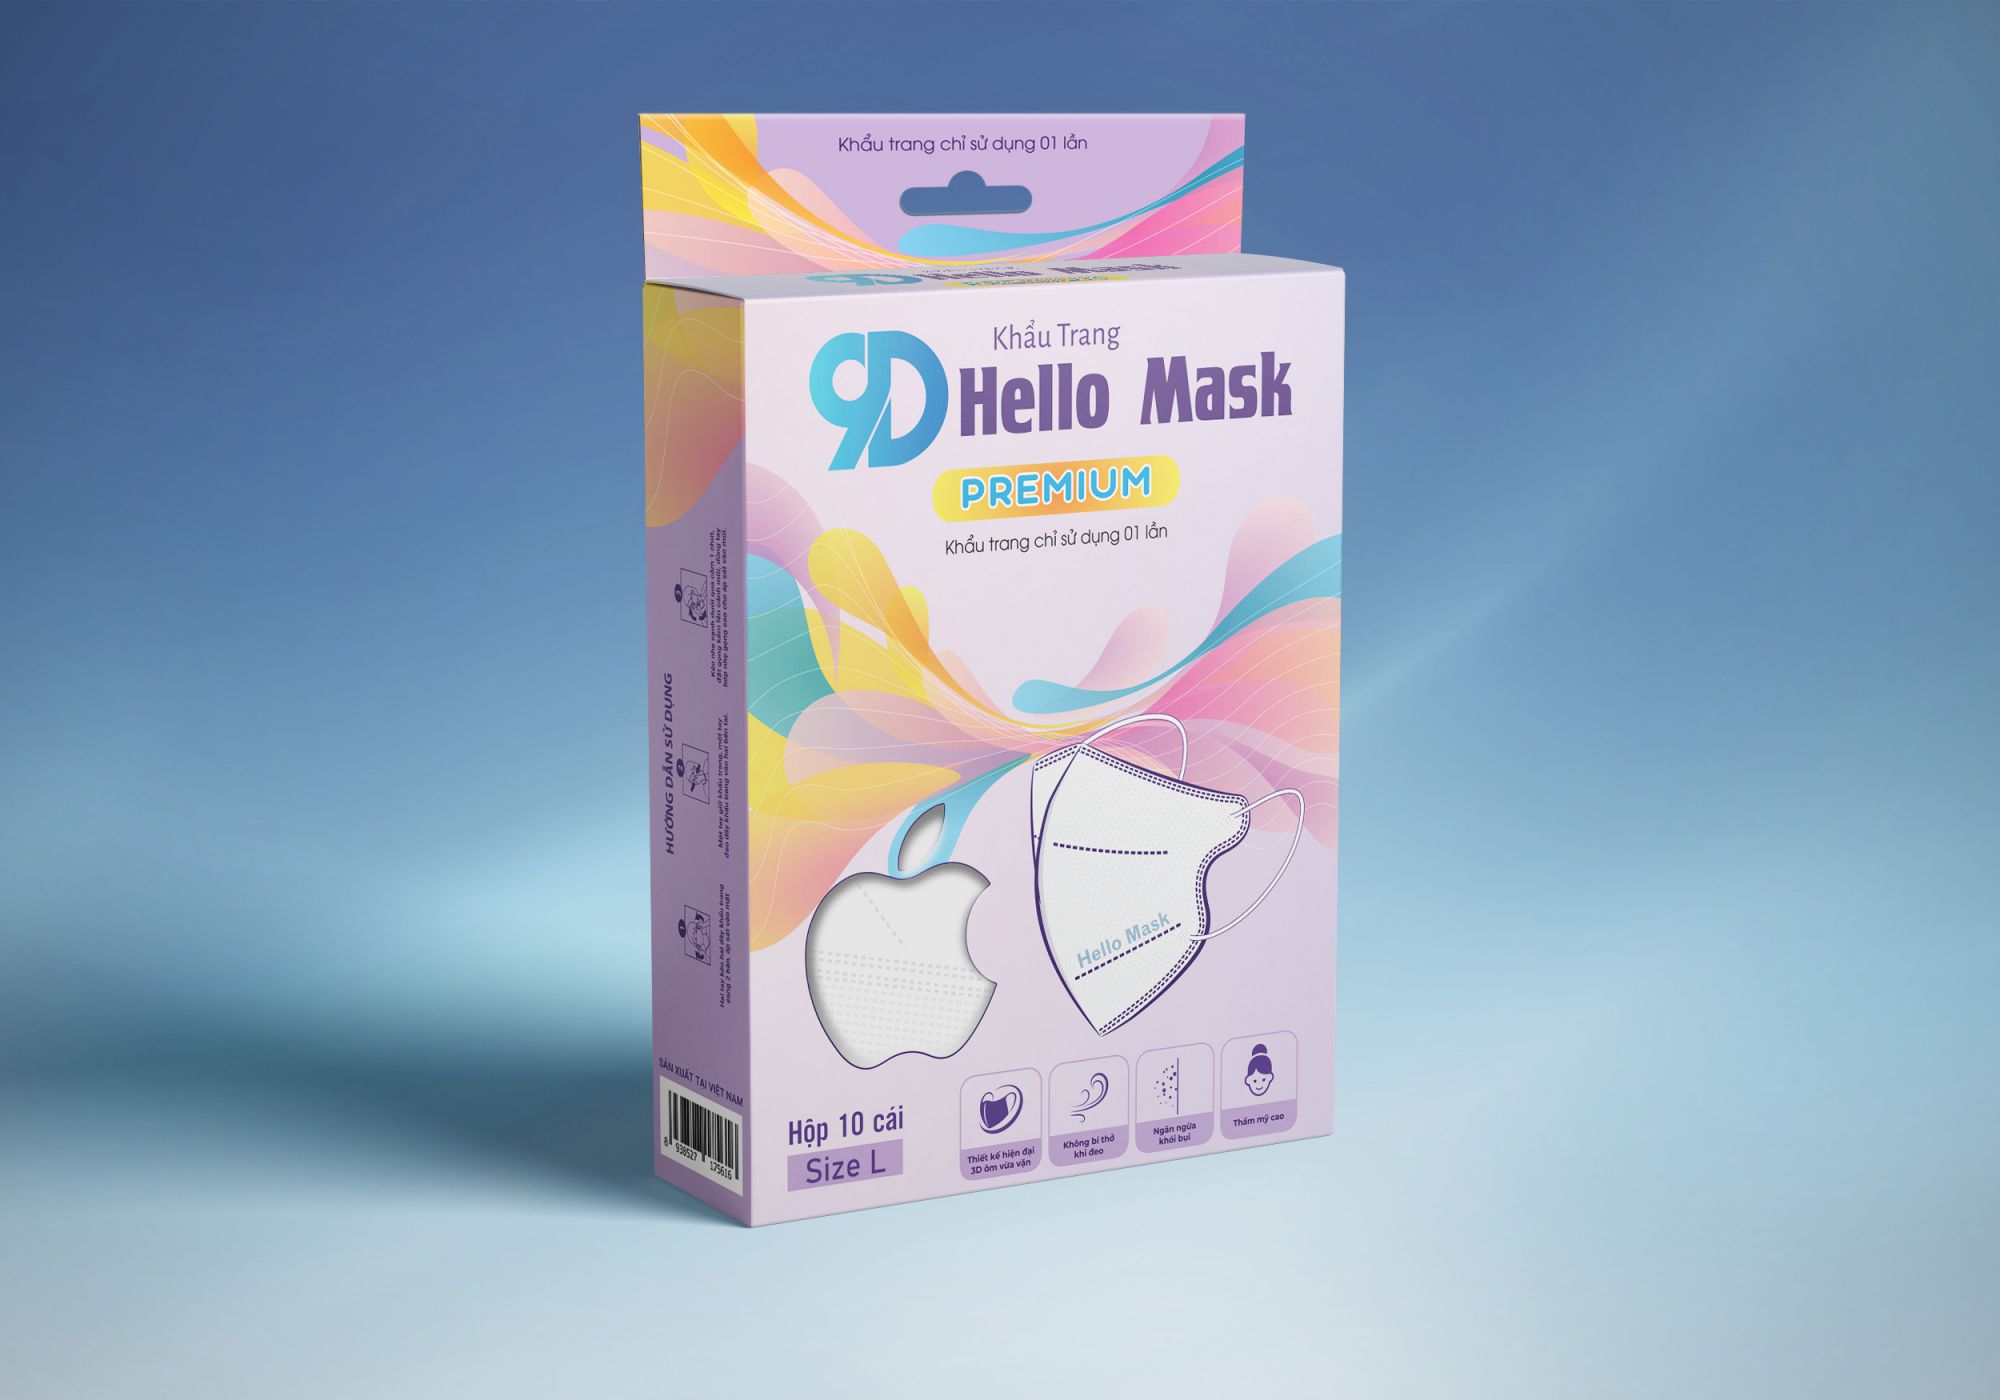 Khẩu Trang 9D Hello Mask - Dẫn đầu xu thế